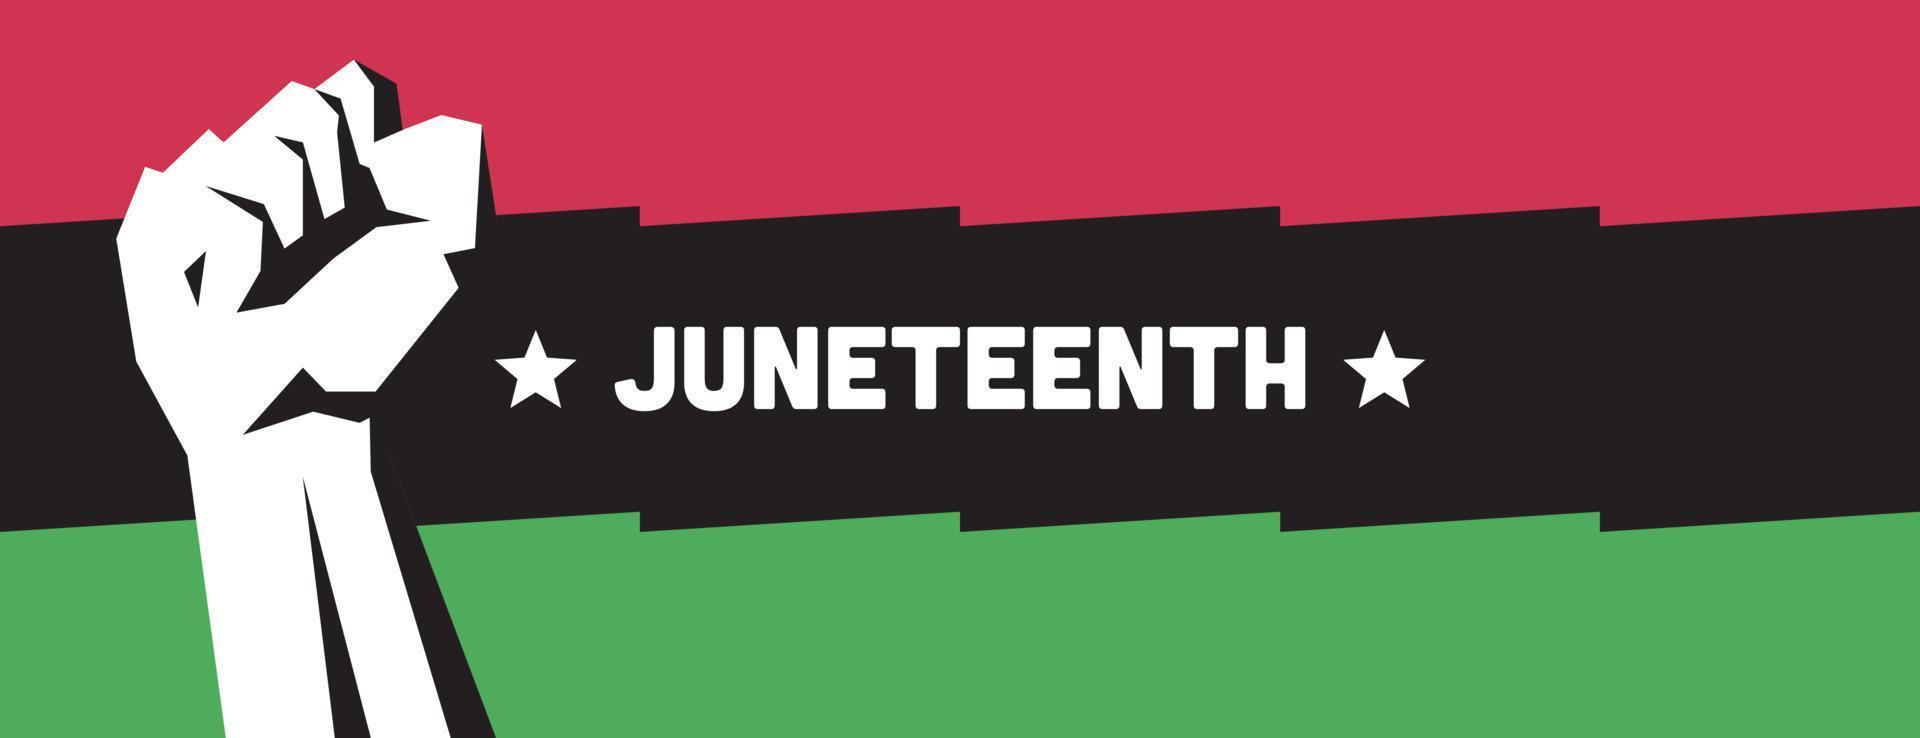 19 de junio día de la libertad amplia pancarta de color verde, negro y rojo. banner del sitio web de la bandera del 16 de junio. vector